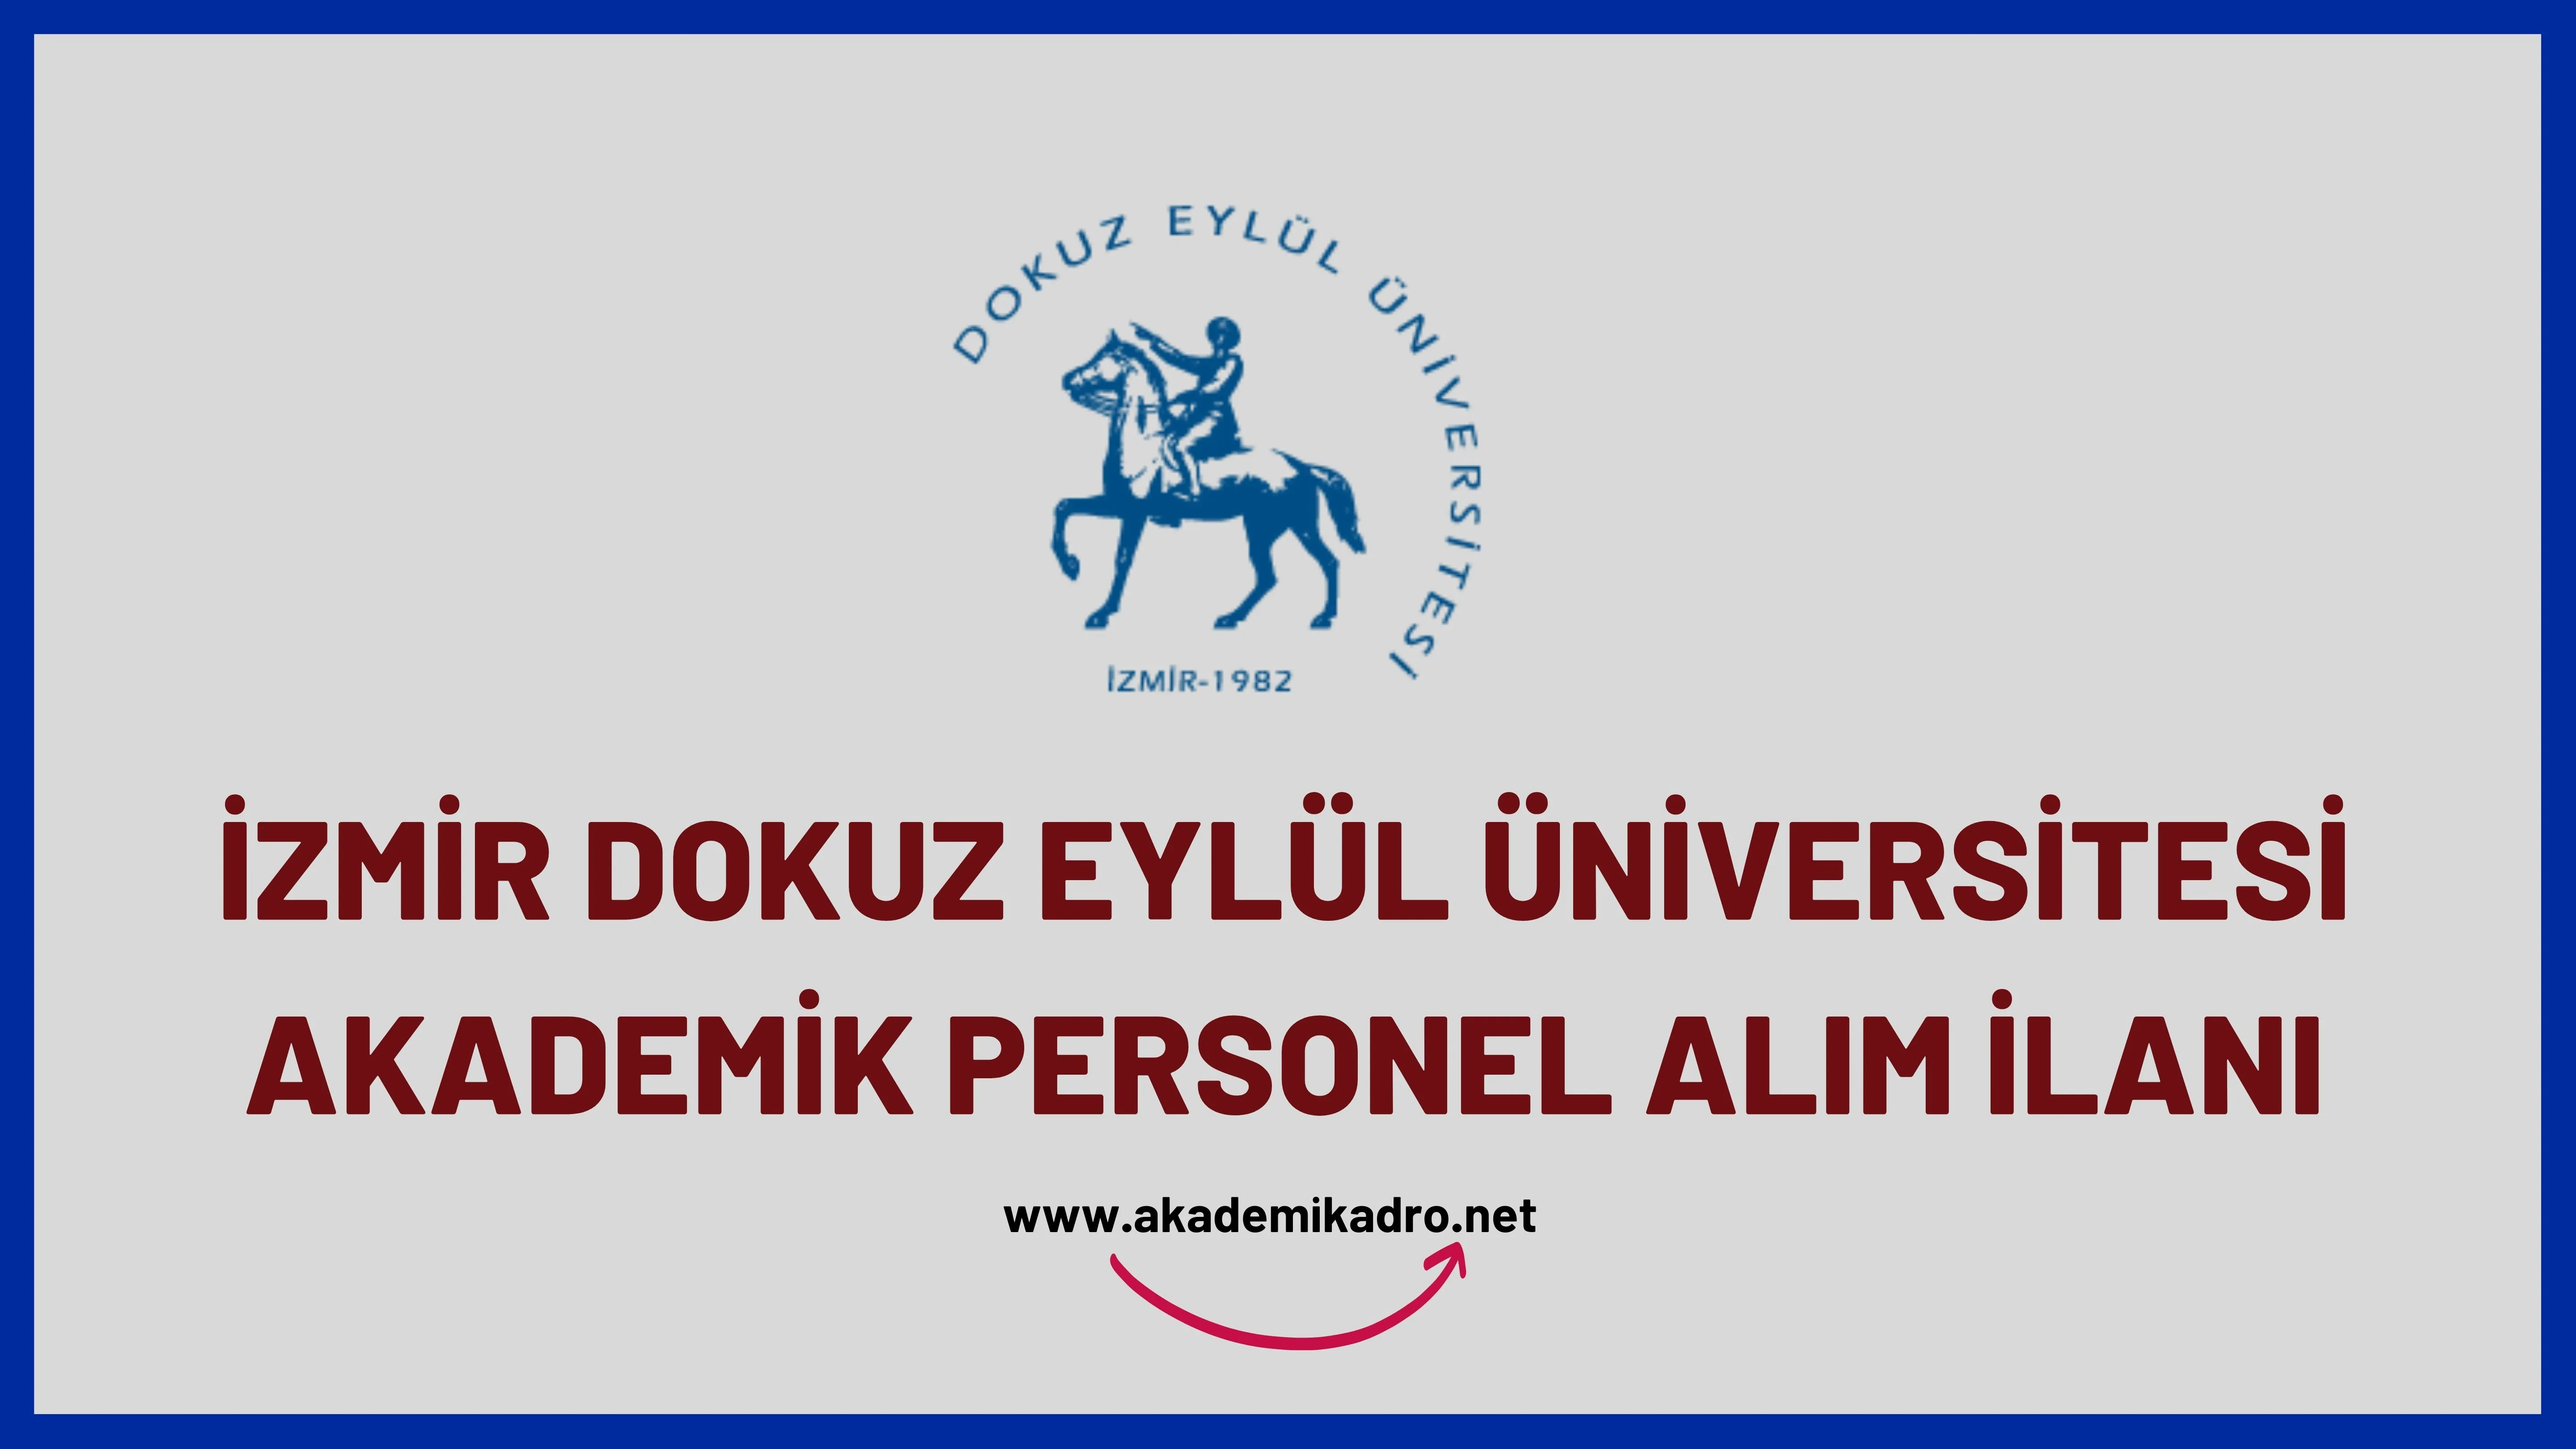 Dokuz Eylül Üniversitesi 23 akademik personel alacaktır.